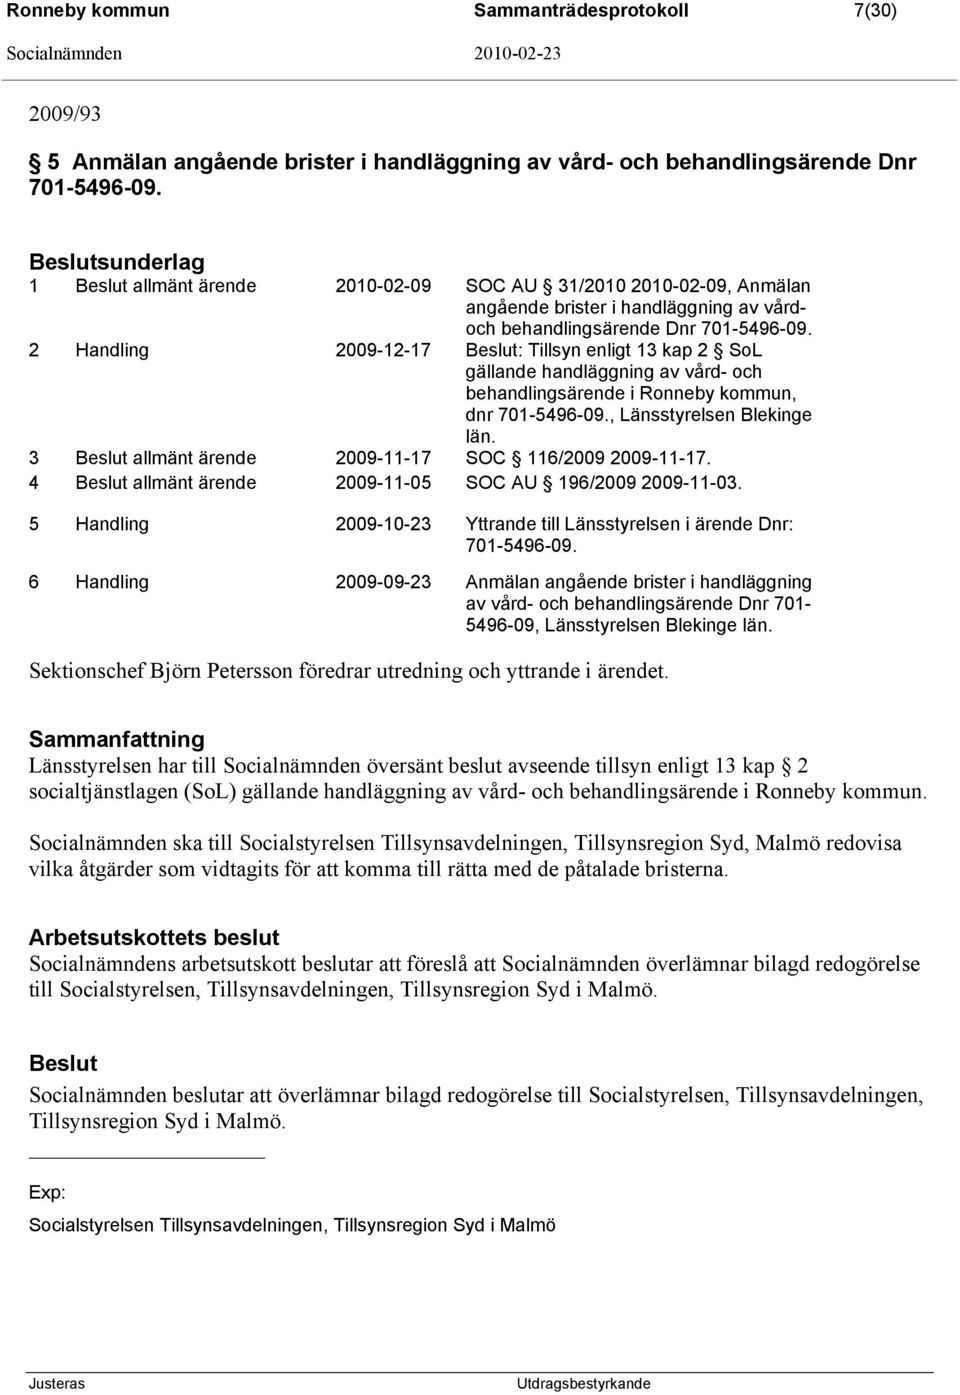 2 Handling 2009-12-17 : Tillsyn enligt 13 kap 2 SoL gällande handläggning av vård- och behandlingsärende i Ronneby kommun, dnr 701-5496-09., Länsstyrelsen Blekinge län.